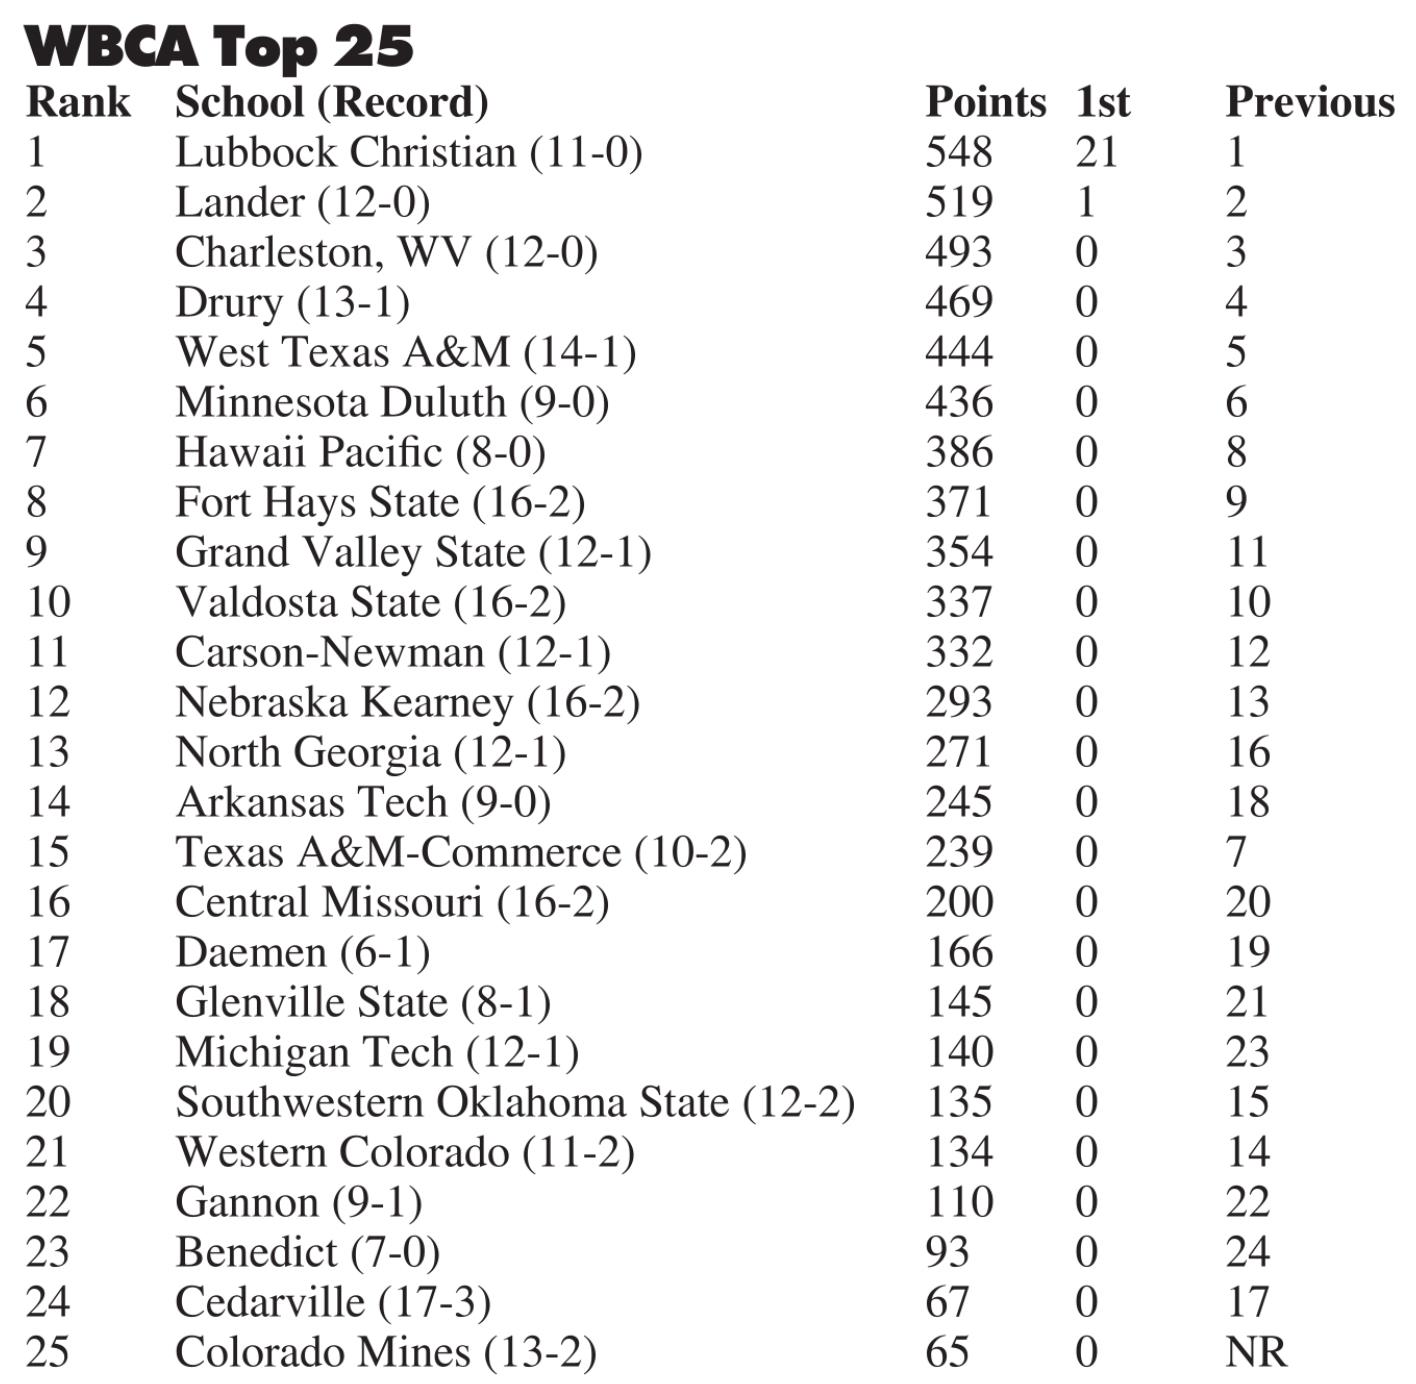 Lady Bulldogs now No. 20 in WBCA rankings